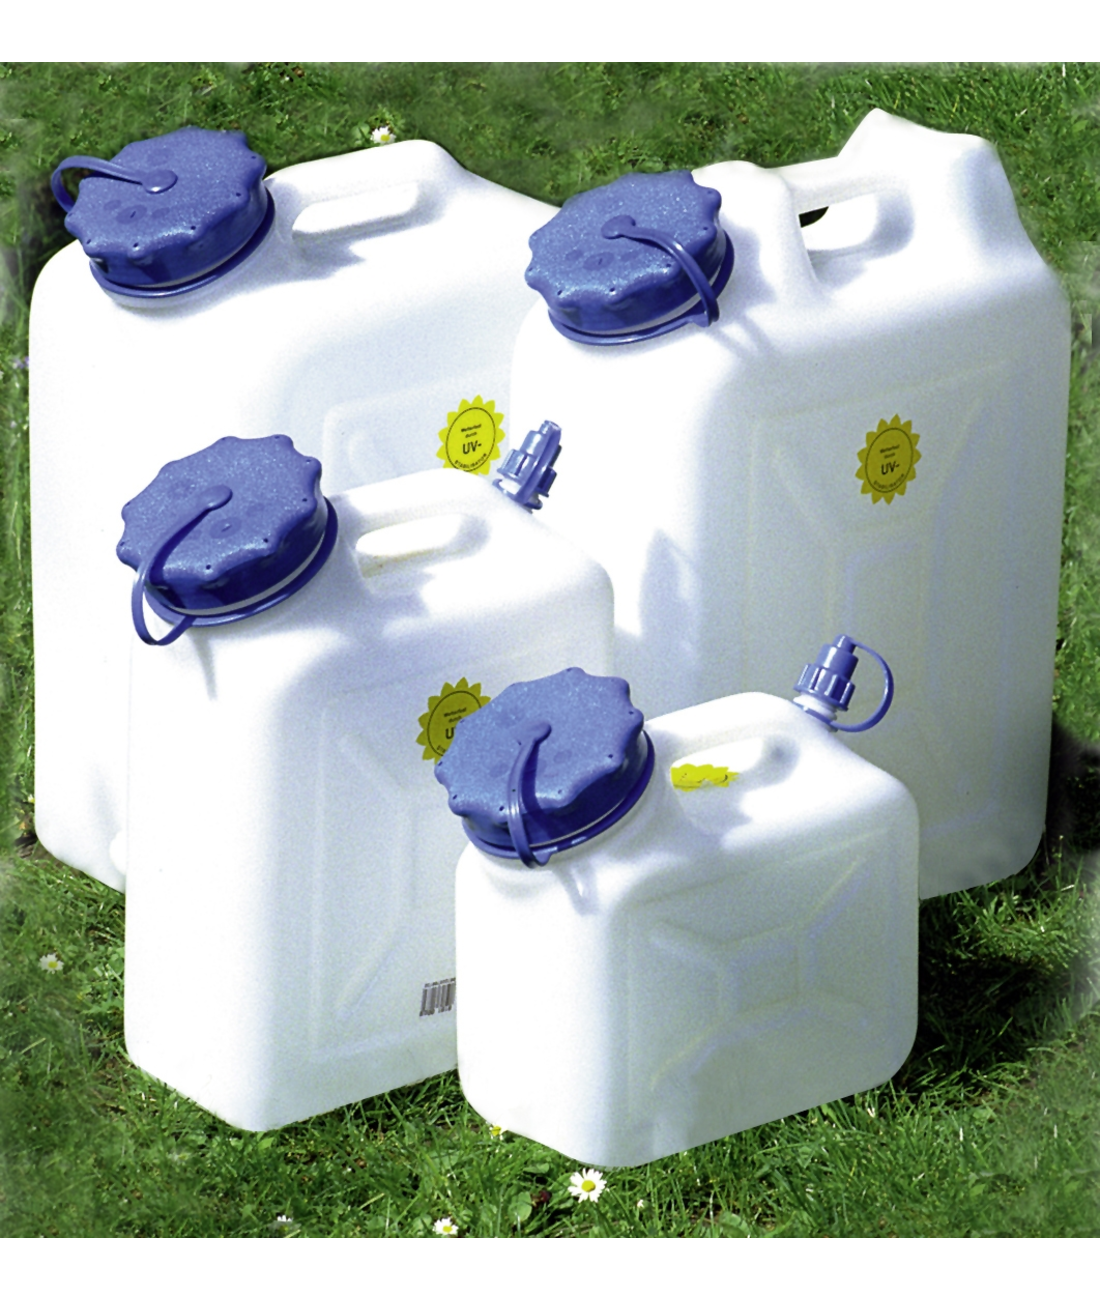 Wasserkanister Weithals mit Verschlussdepot - 13 l - inkl. Zurrgurt, Wasserkanister, Wasser, Sanitär, Campingtoilette, Camping-Shop